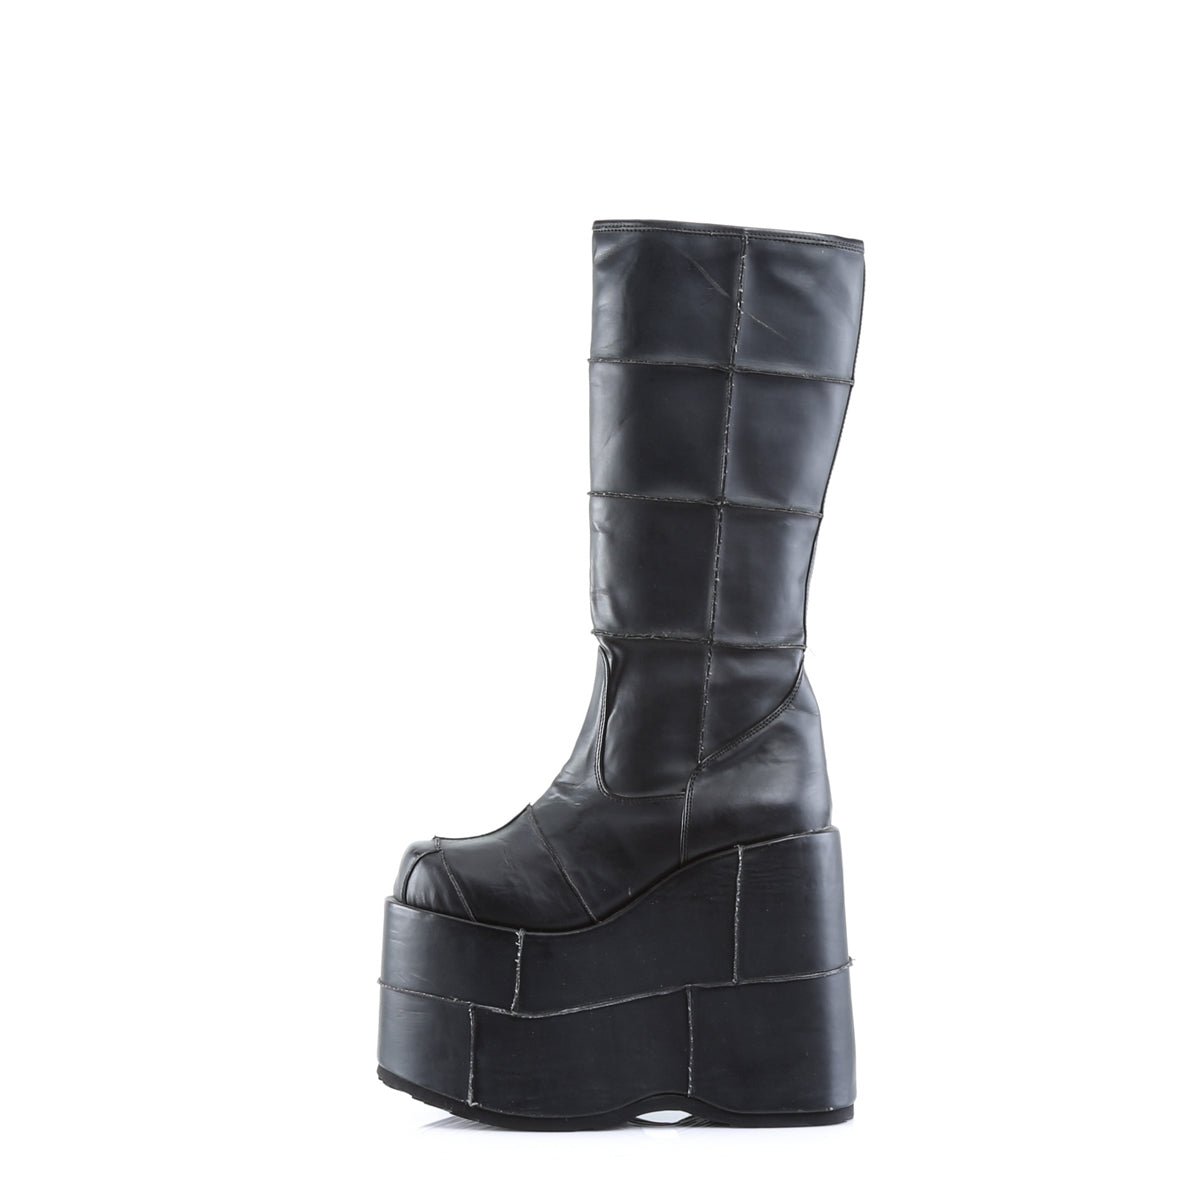 Unisex Platform Boots & Shoes